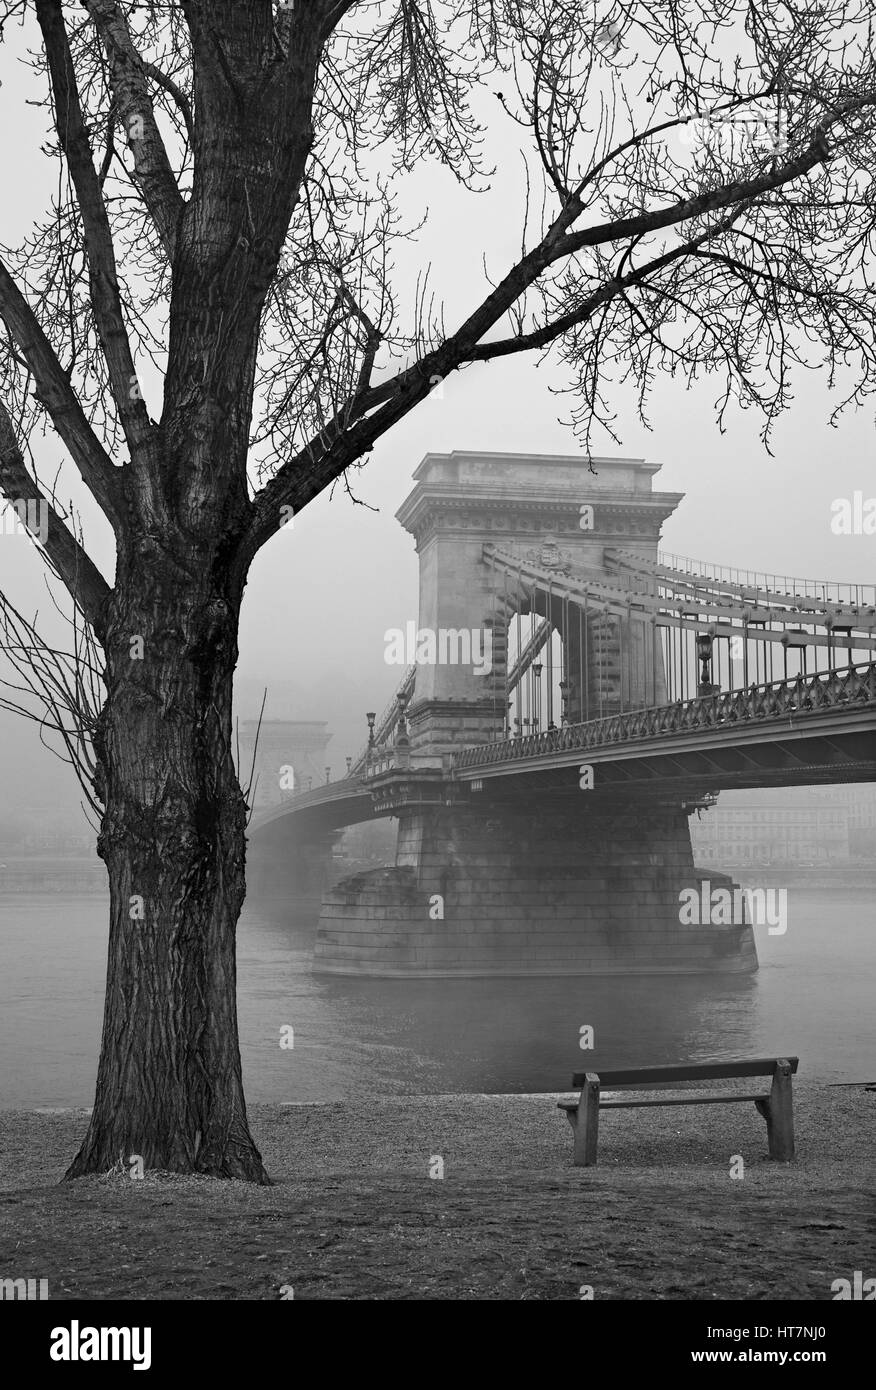 Le Danube et le pont à chaînes Széchenyi à demi caché dans le brouillard. Budapest, Hongrie. Photo prise du côté de Pest. Banque D'Images